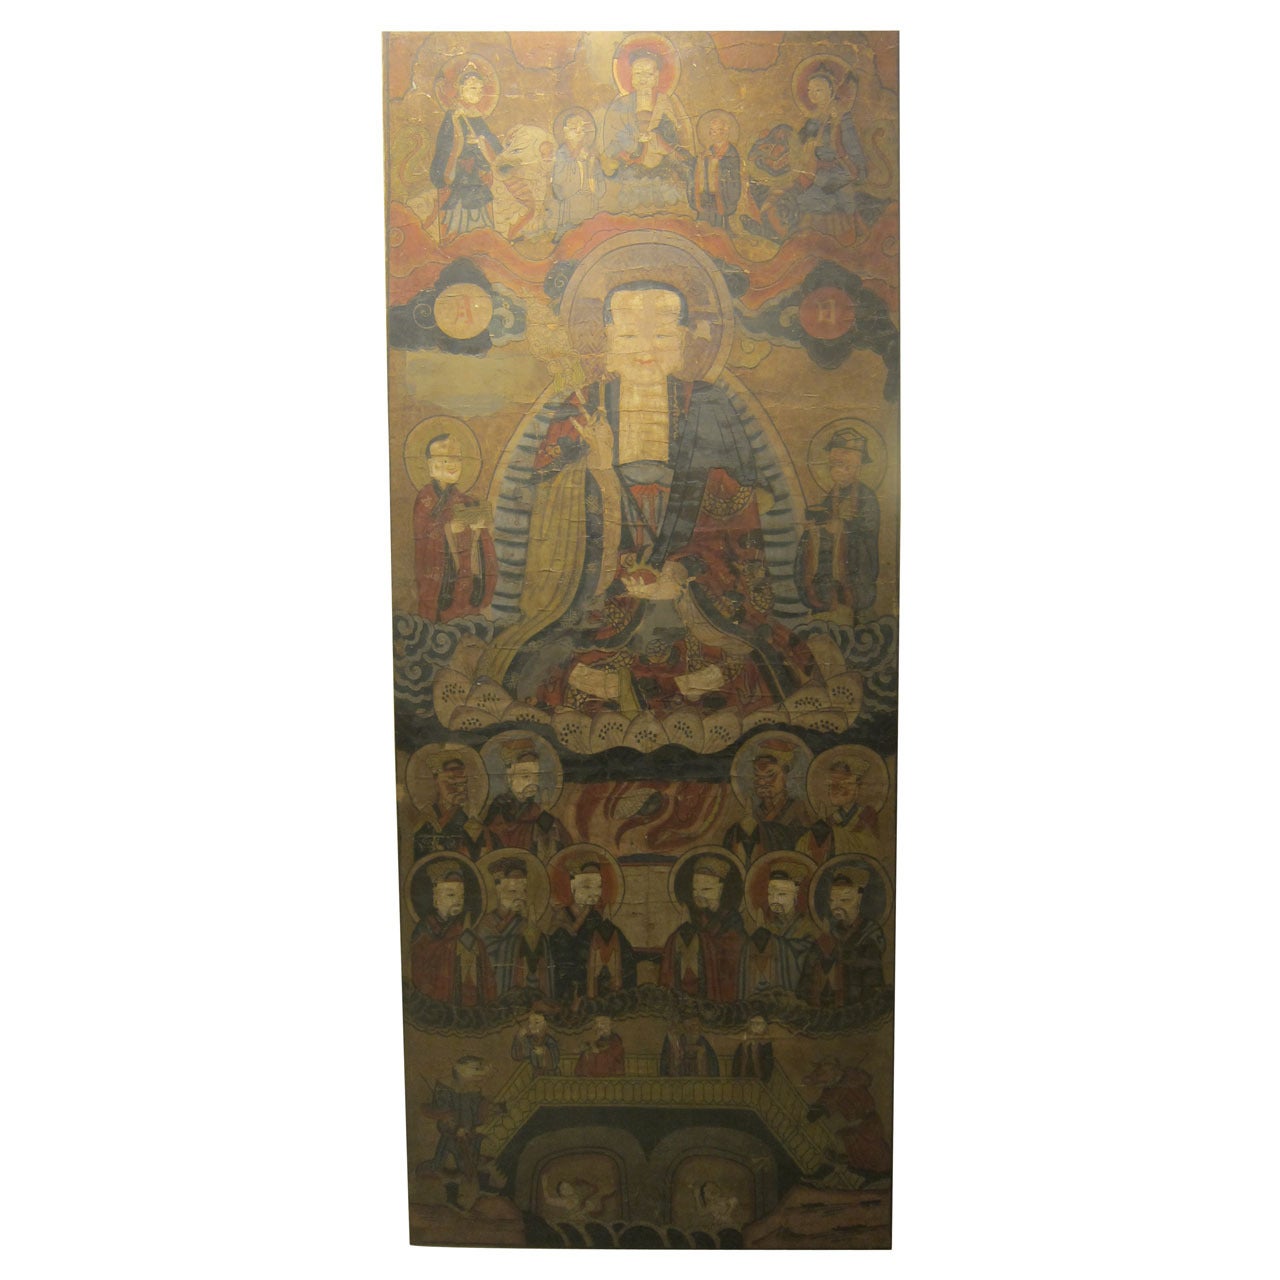 Buddhisches chinesisches Schnörkelgemälde des 18. Jahrhunderts